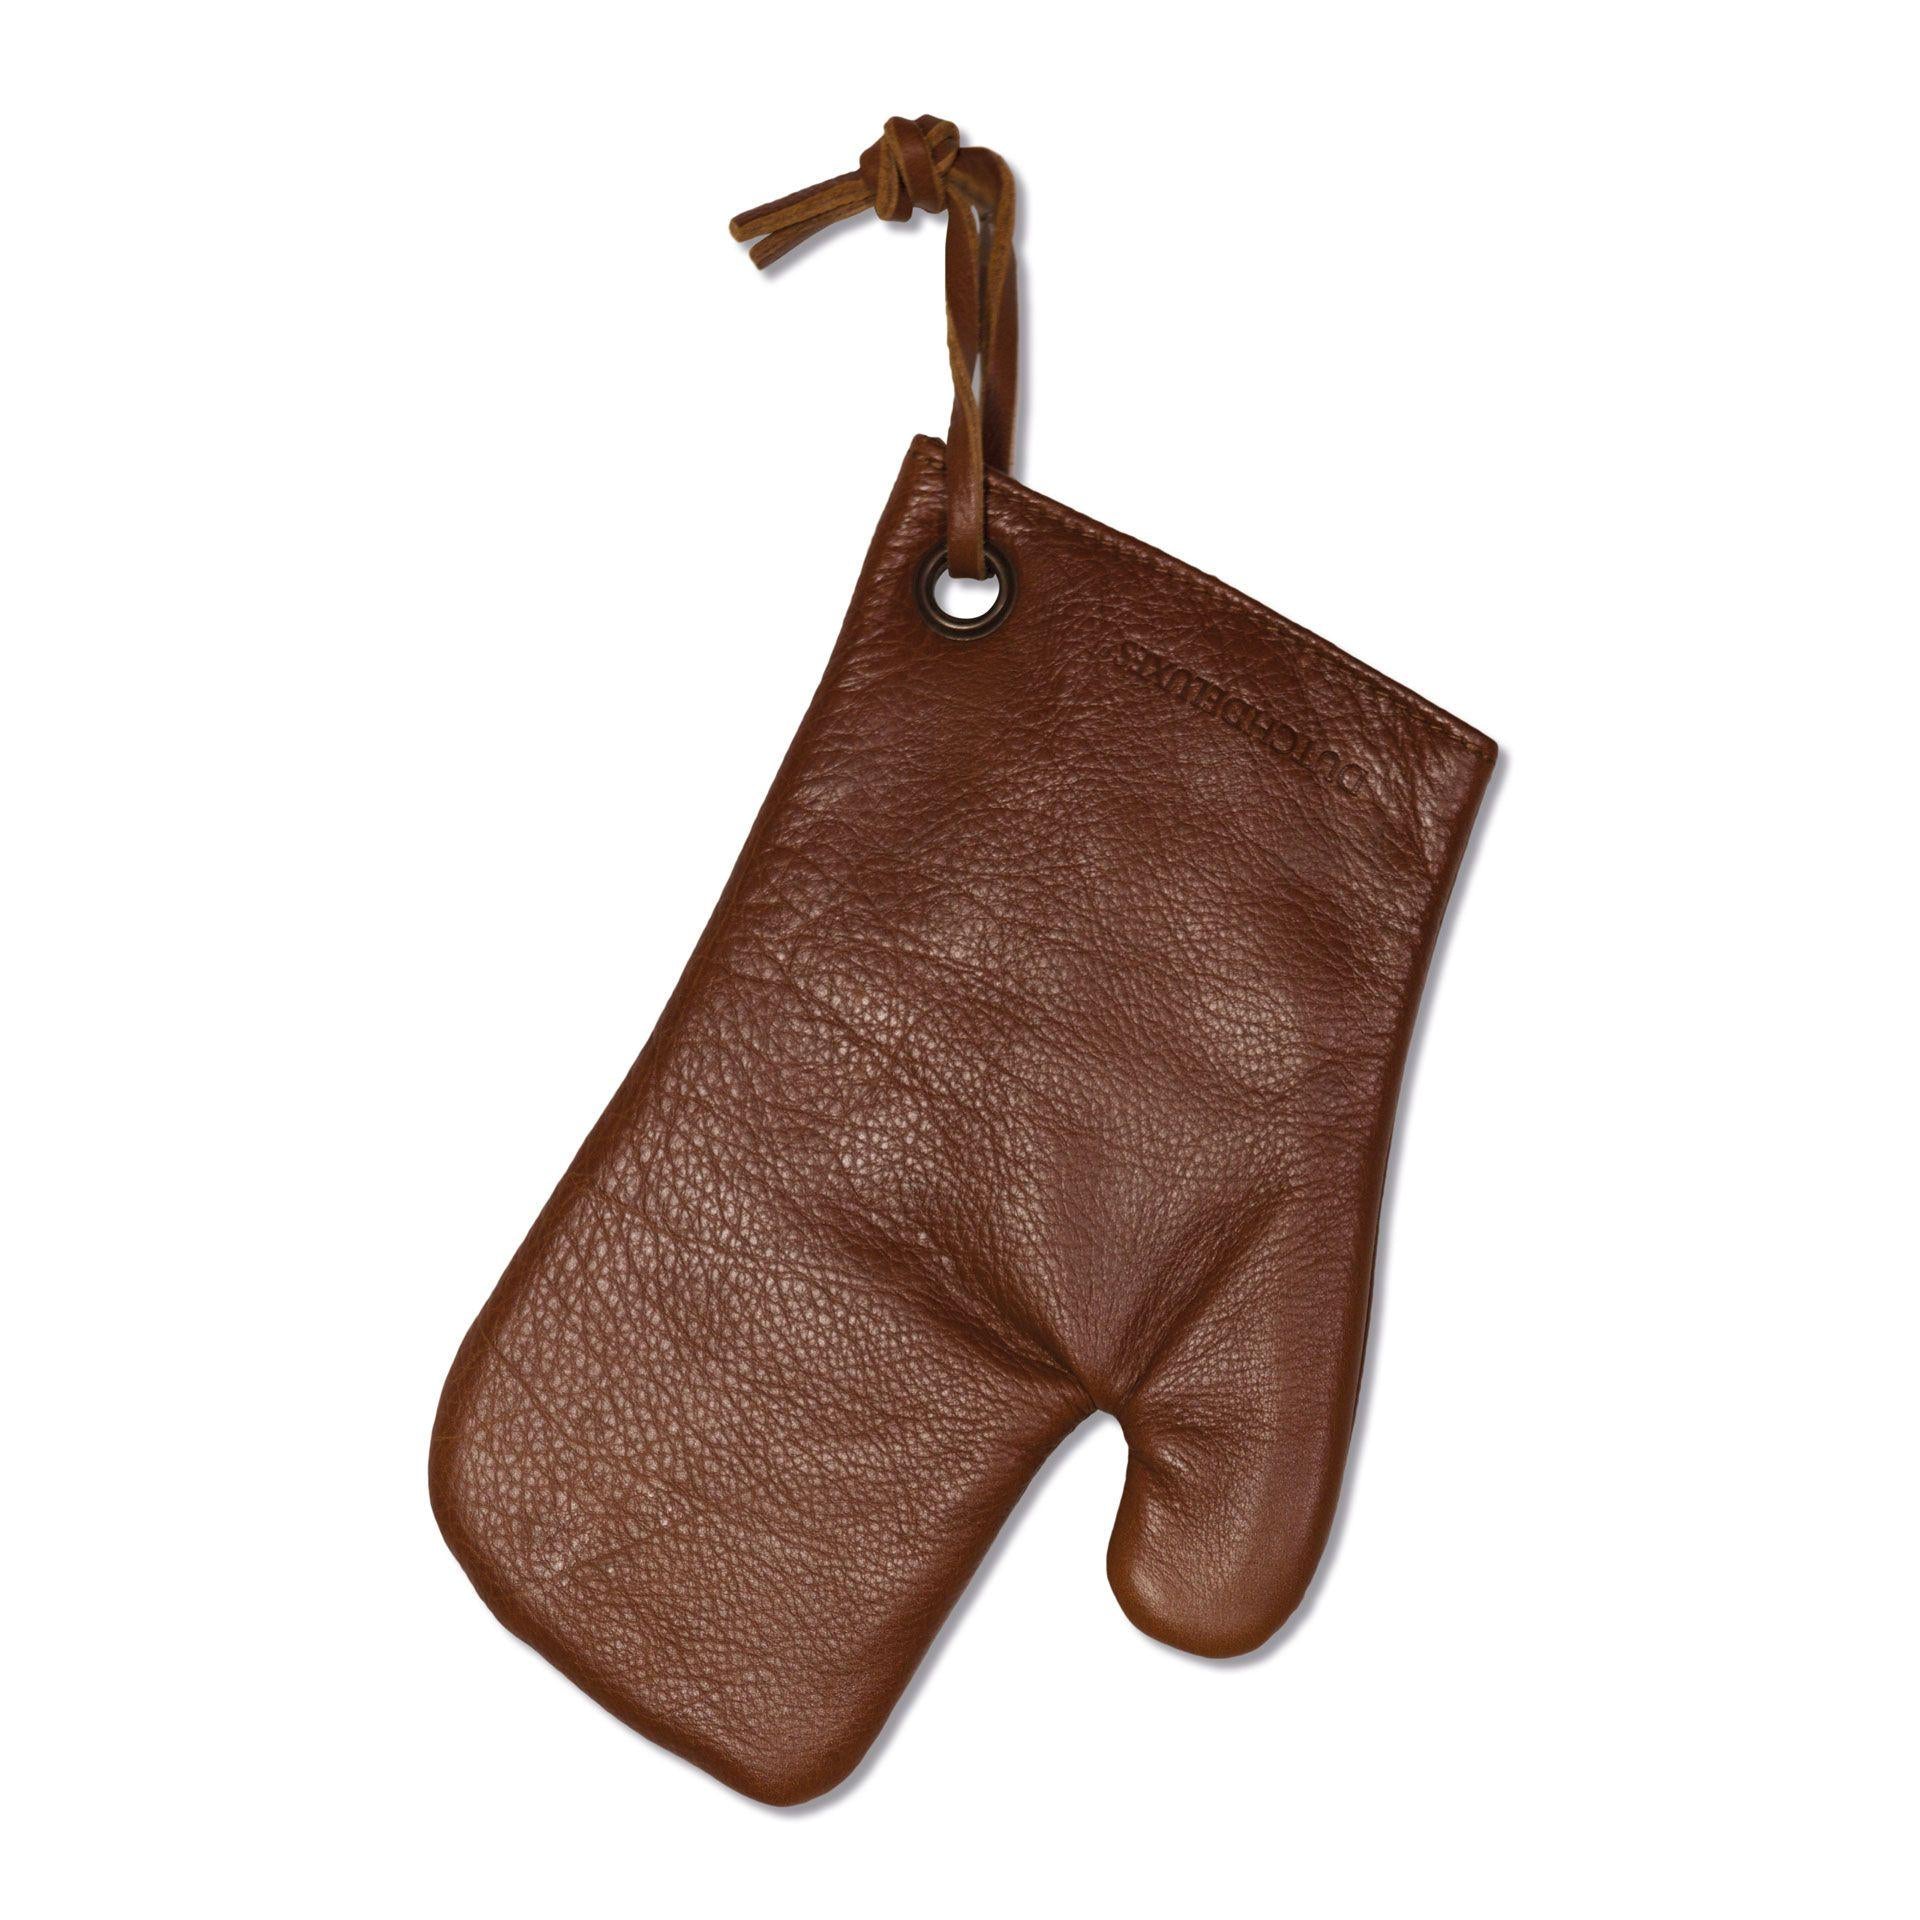 Dutchdeluxes Pot handske klassisk læder, brun